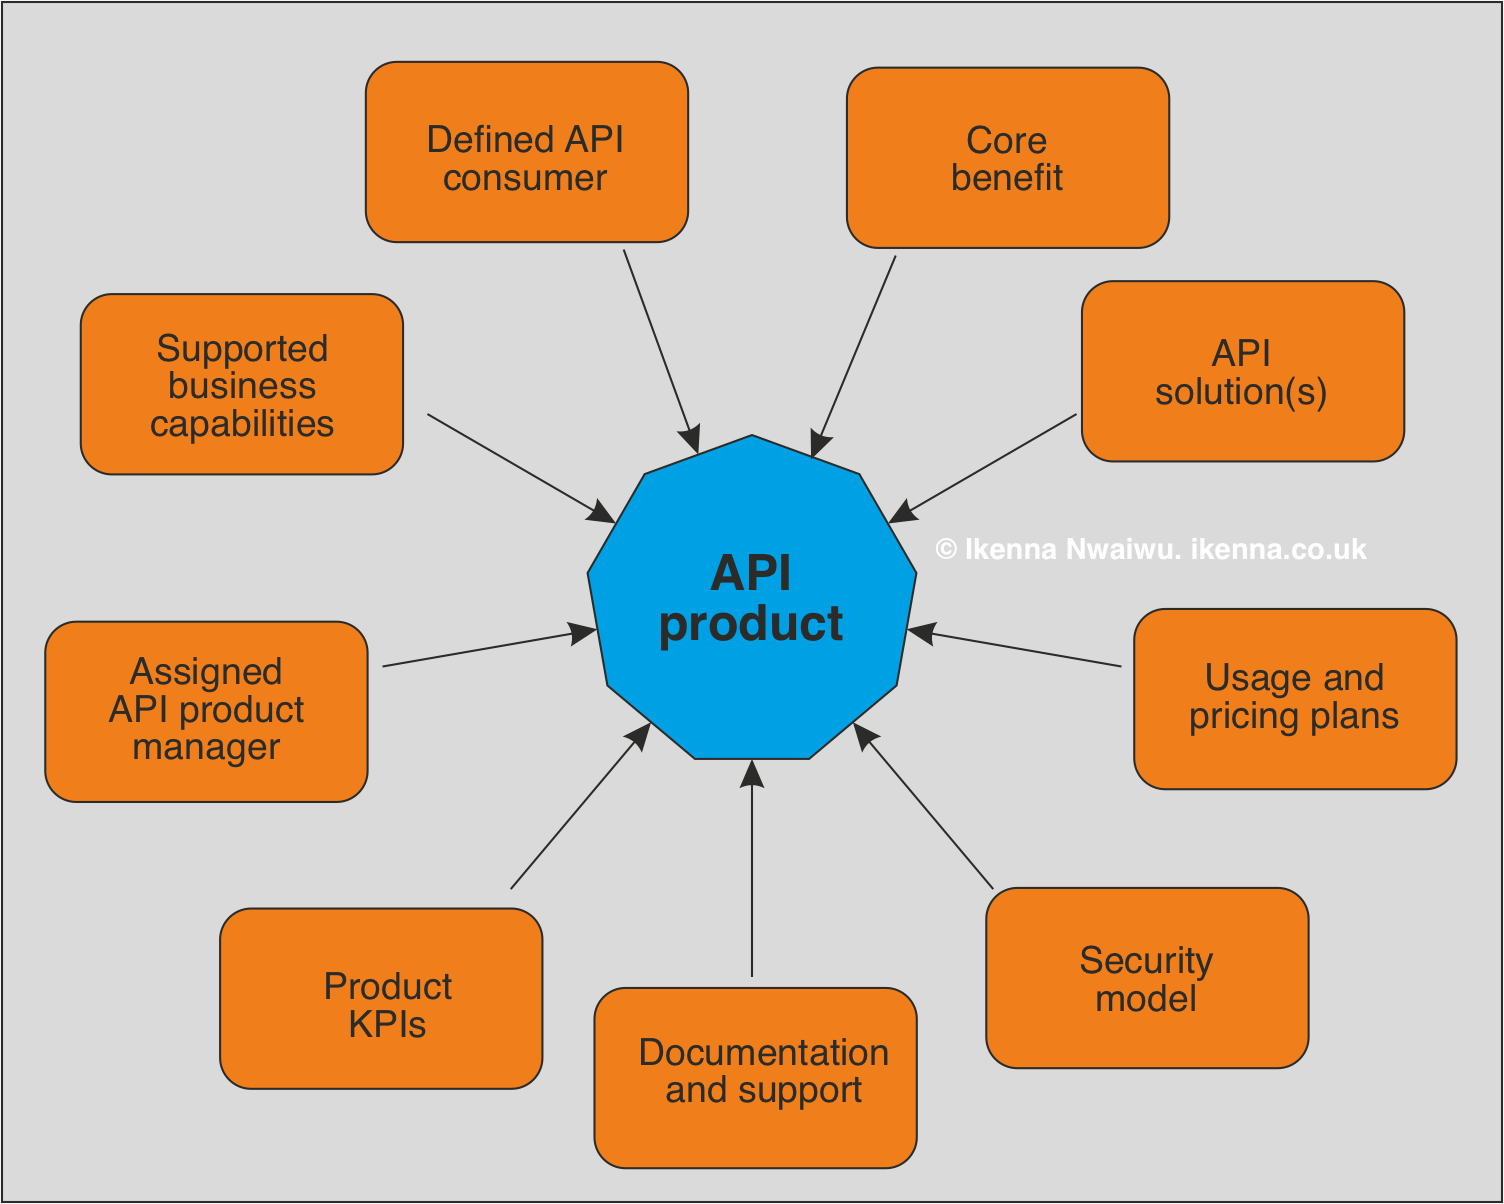 API as a Product